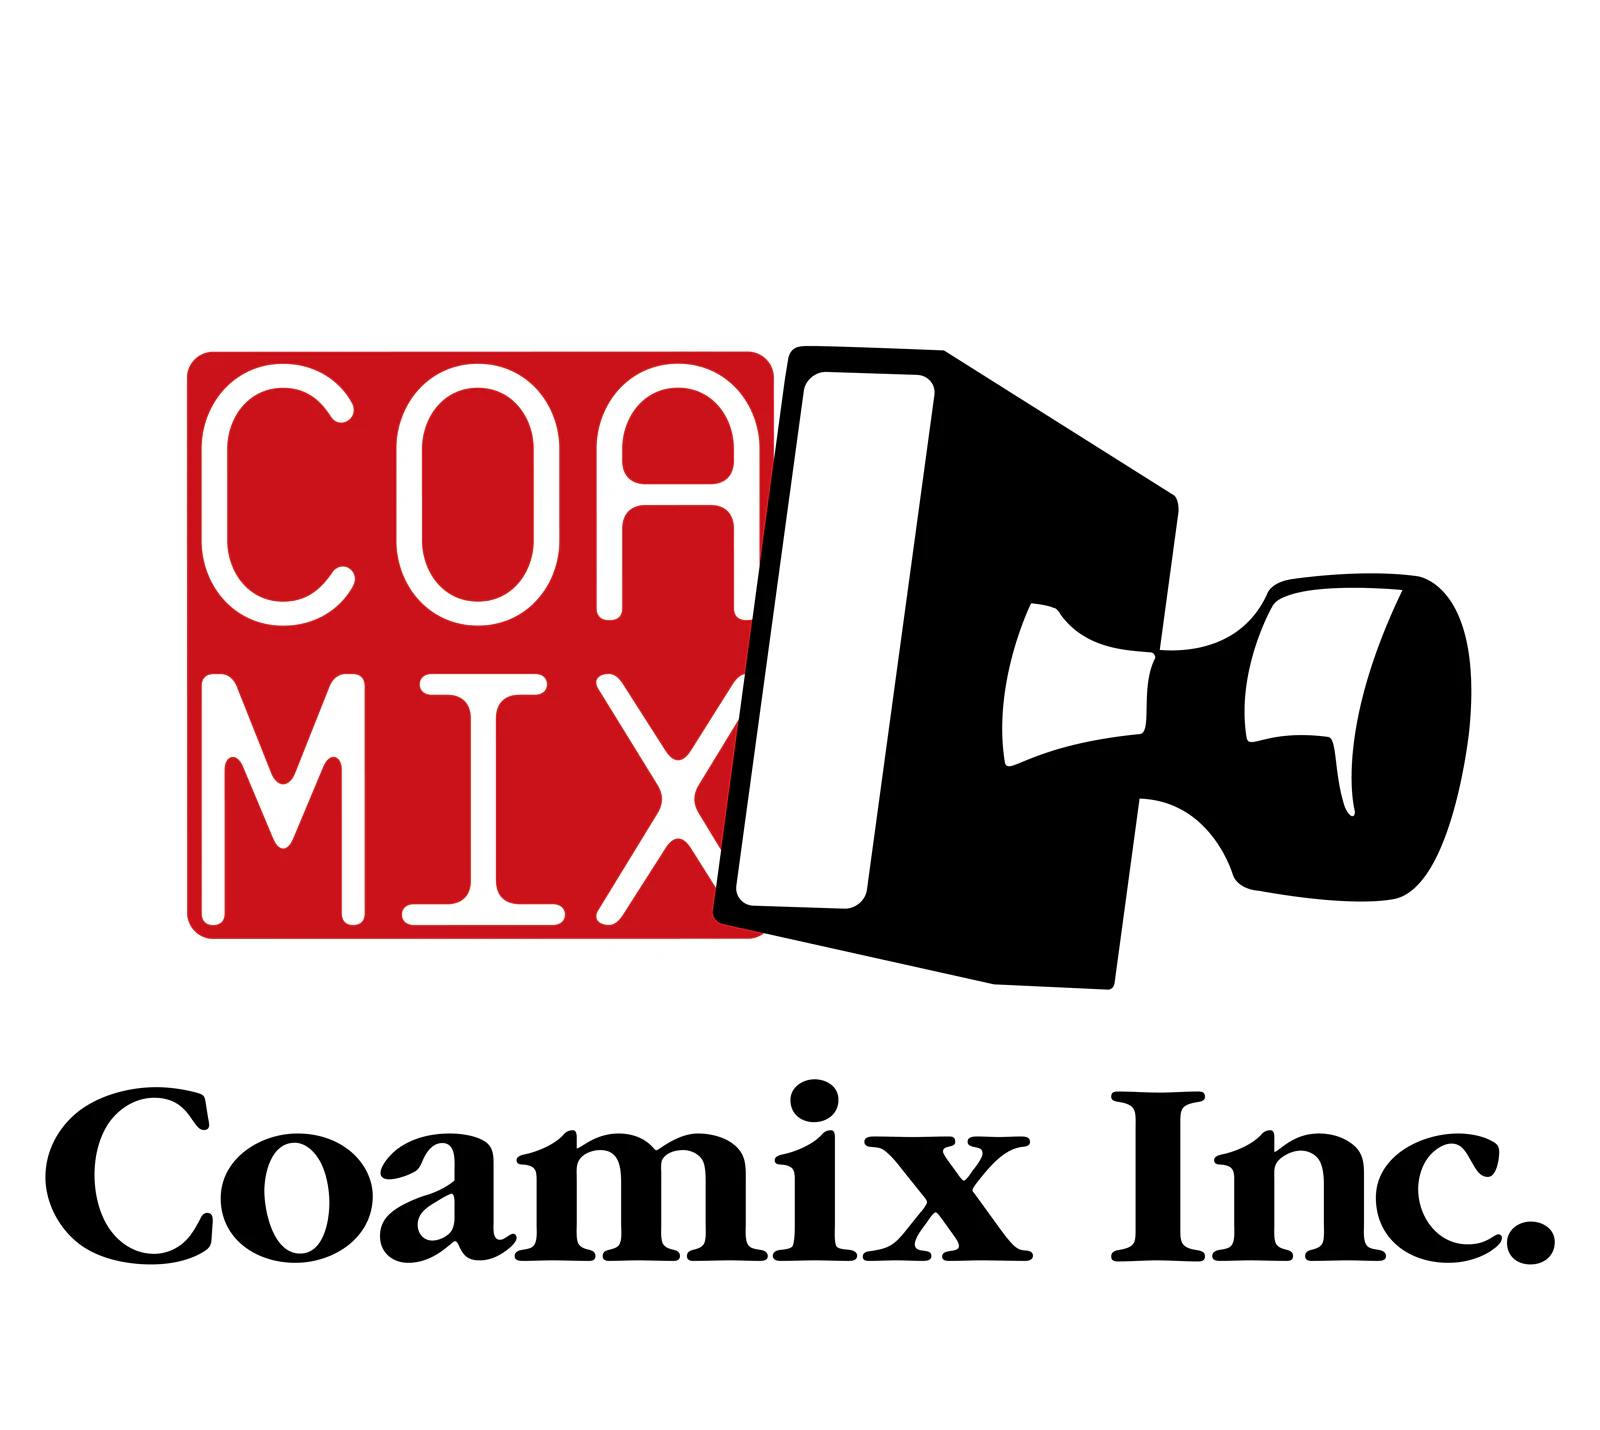 ¡El sitio web oficial de Coamix ha sido renovado! ¡El “Catálogo Manga” que te permite obtener una vista previa y comprar inmediatamente es súper conveniente!